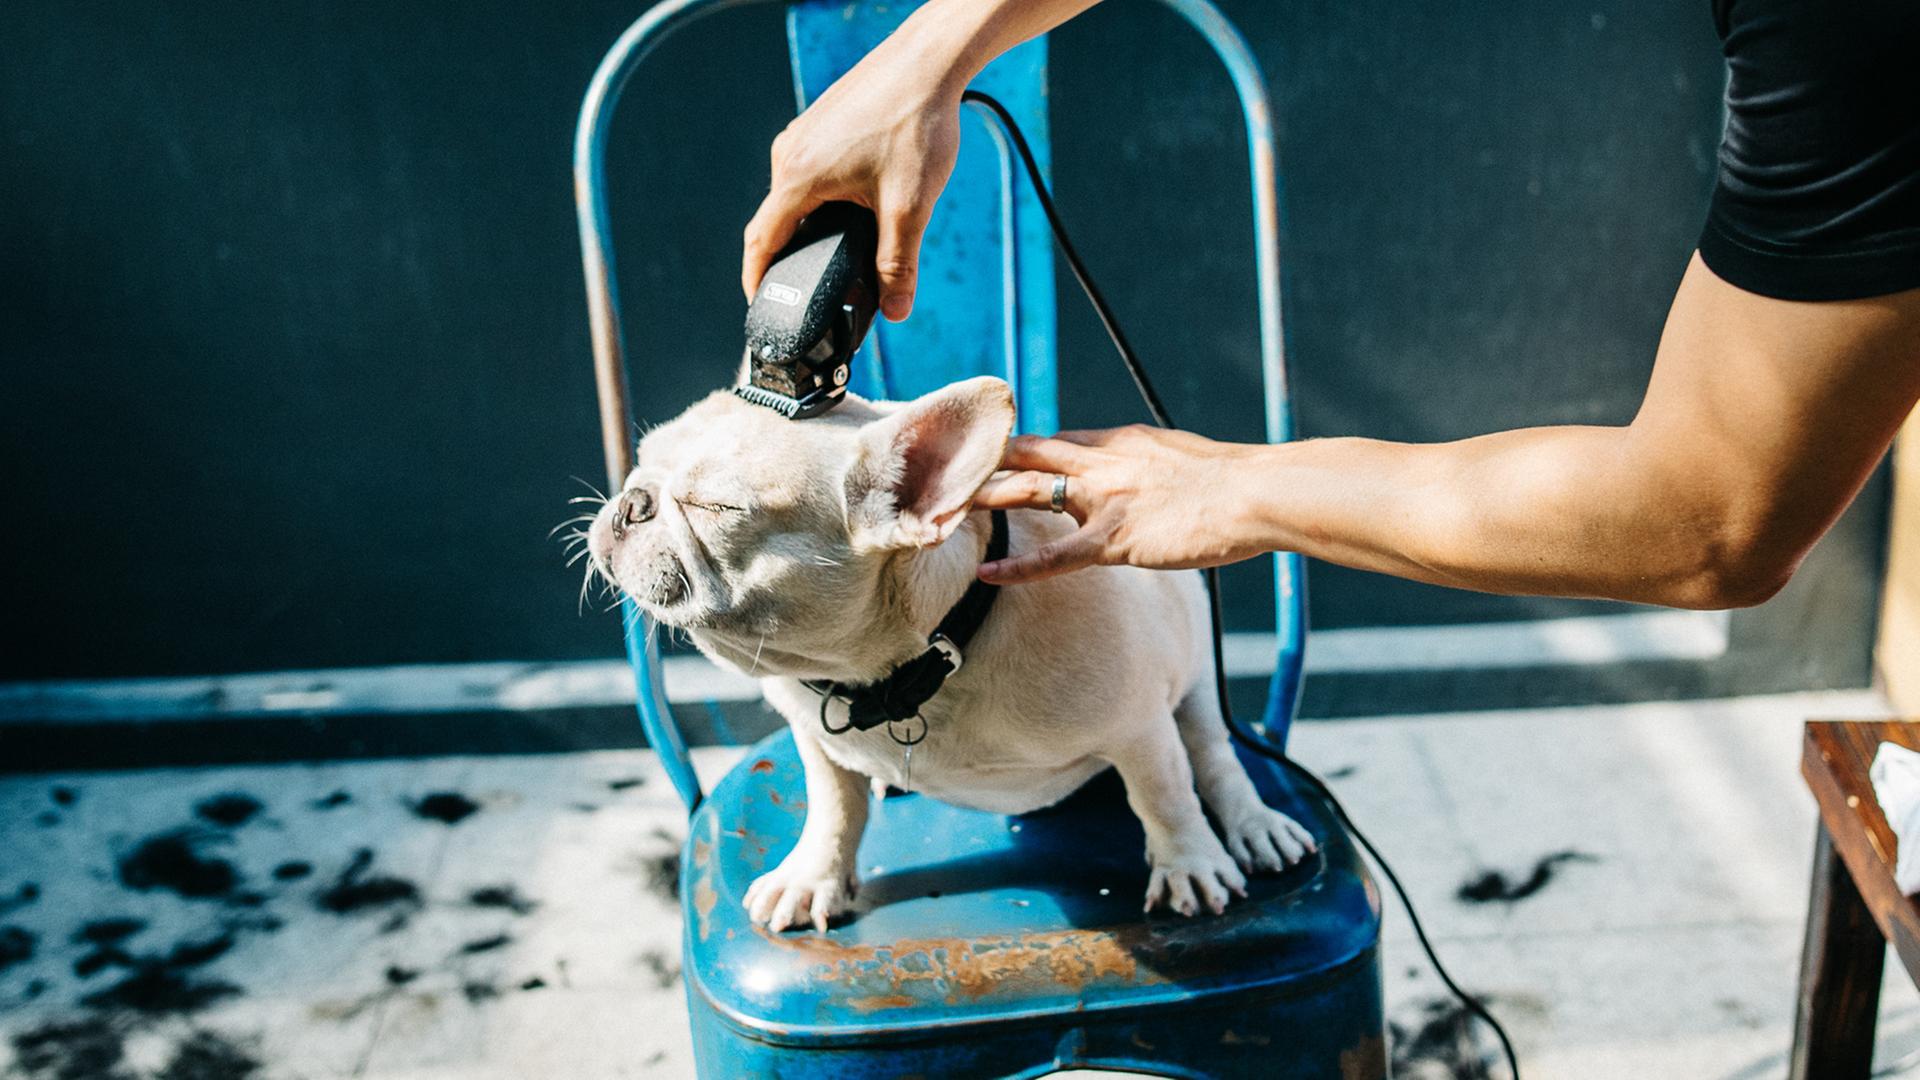 In einem Hundefriseursalon kann man viel über die Beziehung zwischen Mensch und Tier lernen. Zu sehen: Ein kleiner Hund auf einem blauen Plastikstuhl wird am Kopf rasiert.